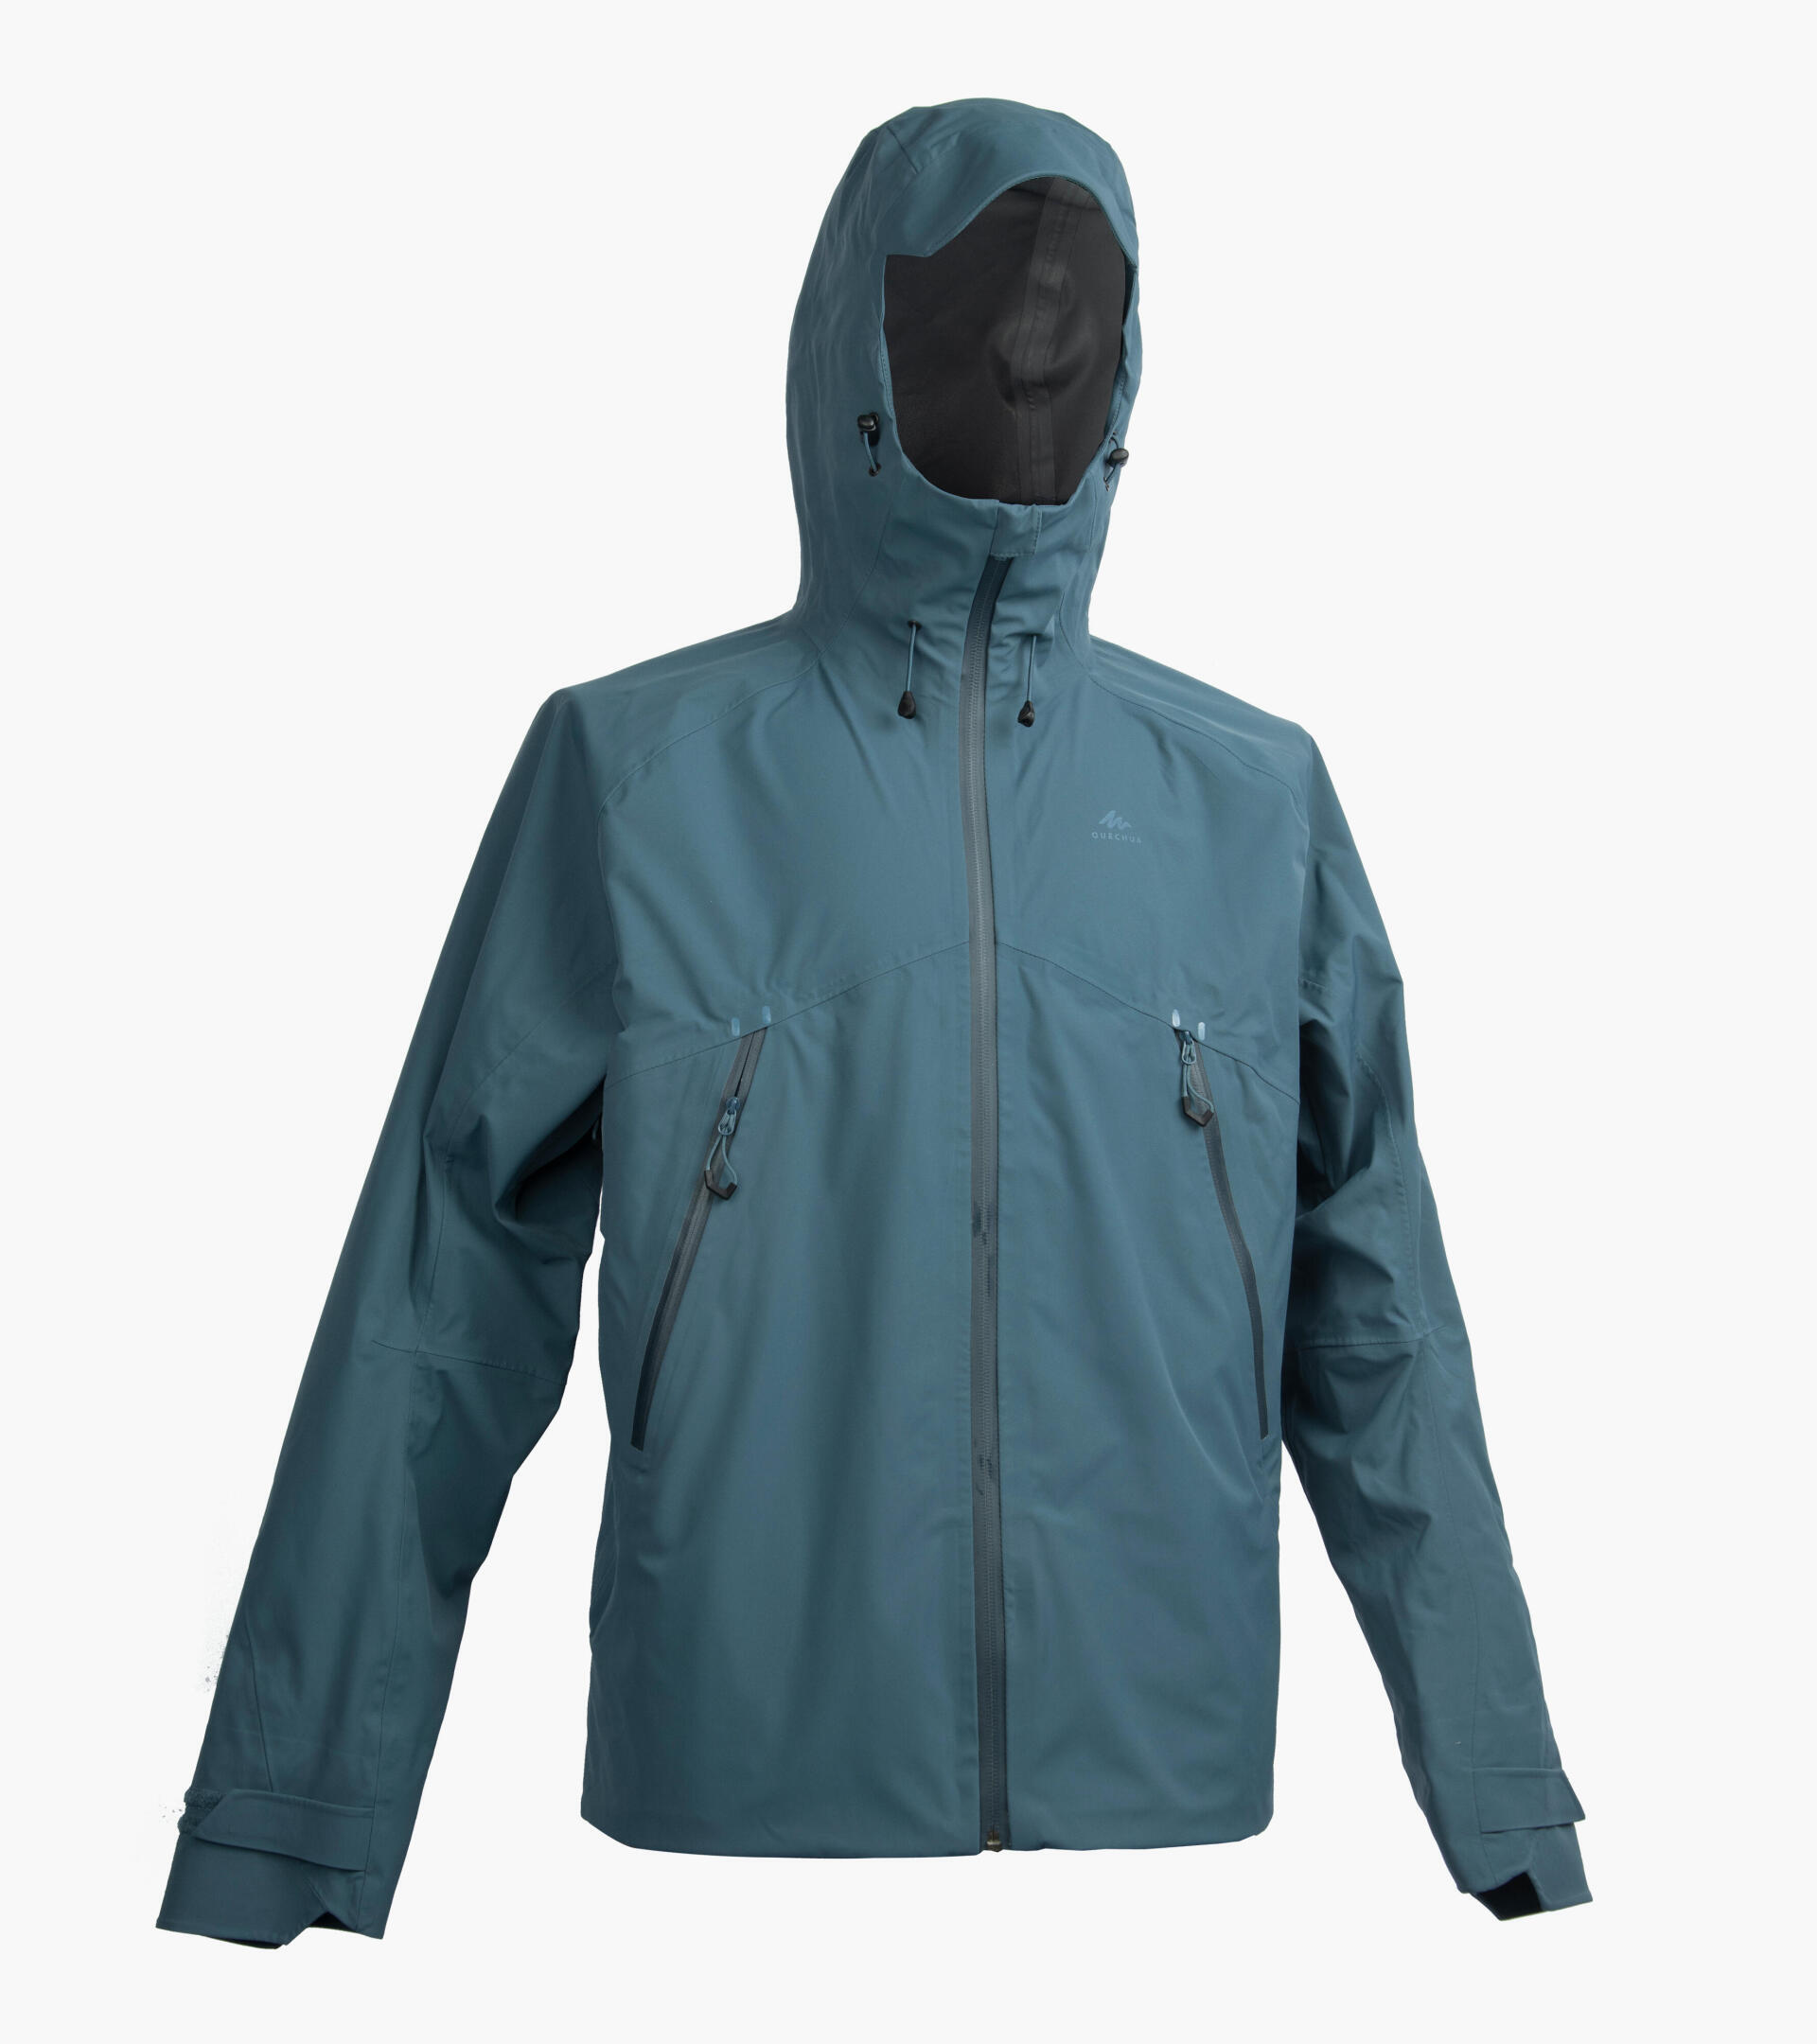 Hiking | How do you measure the waterproofness of a hiking jacket?